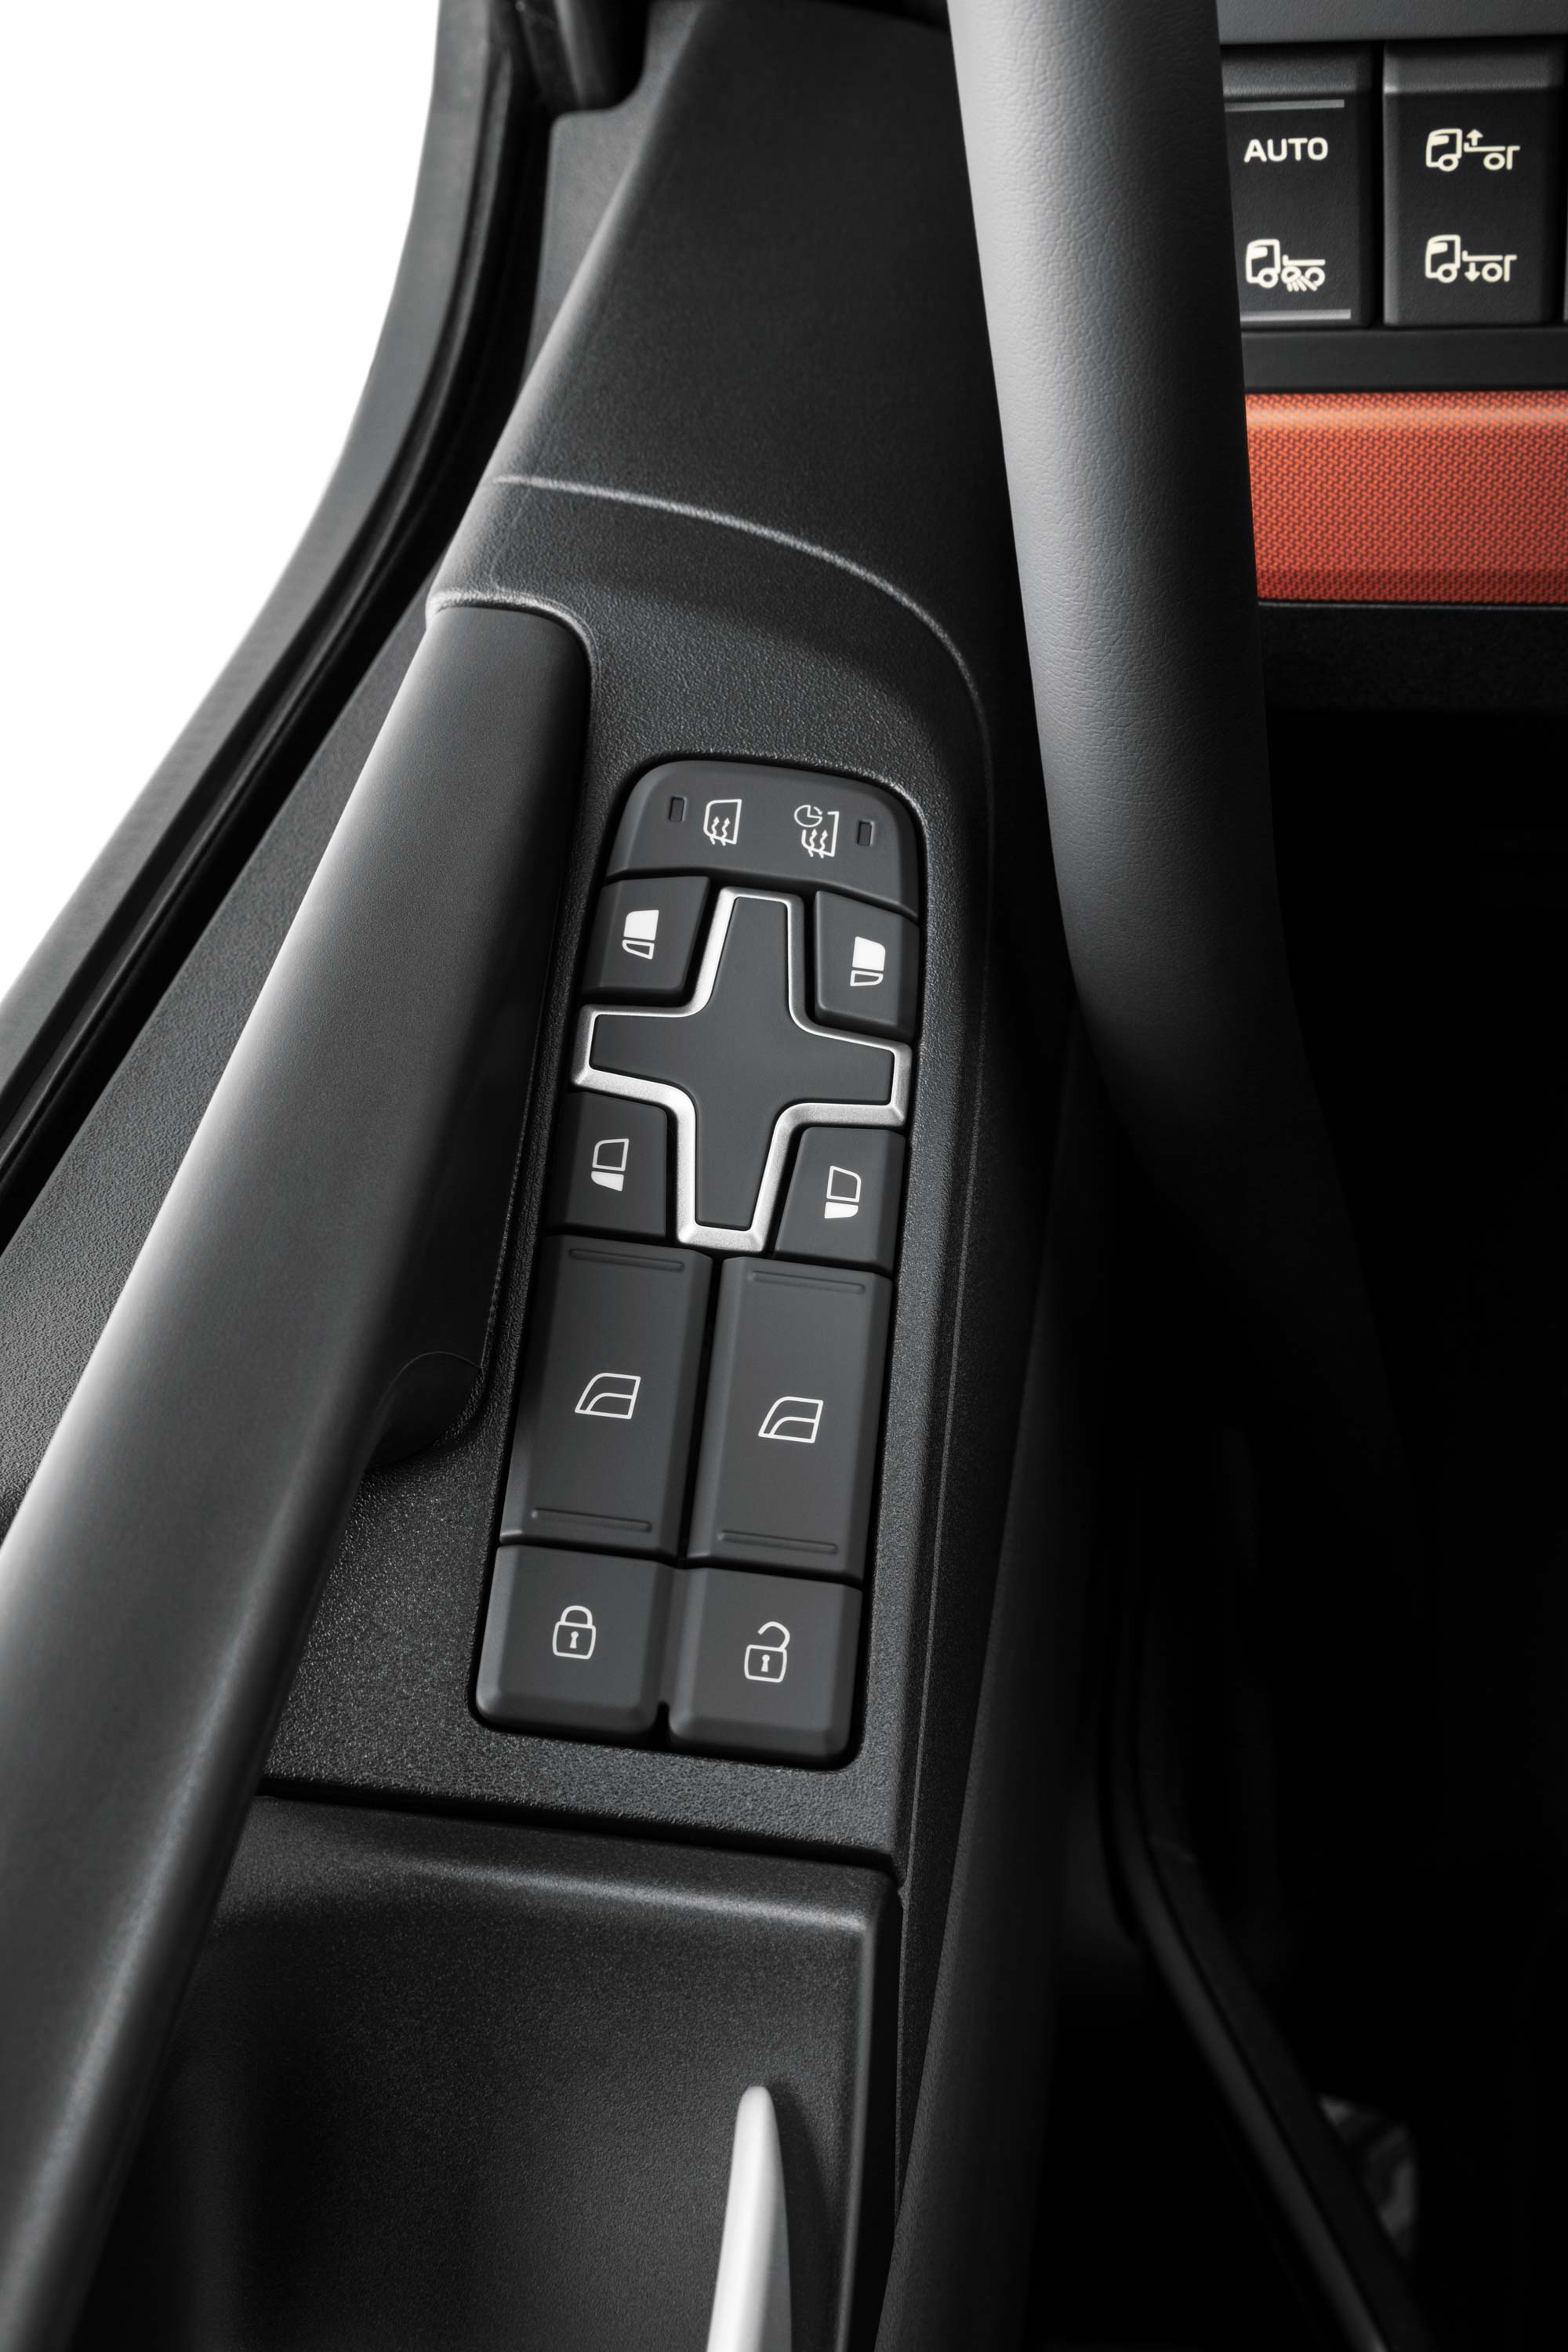 Ovládacie prvky integrované v interiéri vozidla Volvo FH16 uľahčujú prístup.